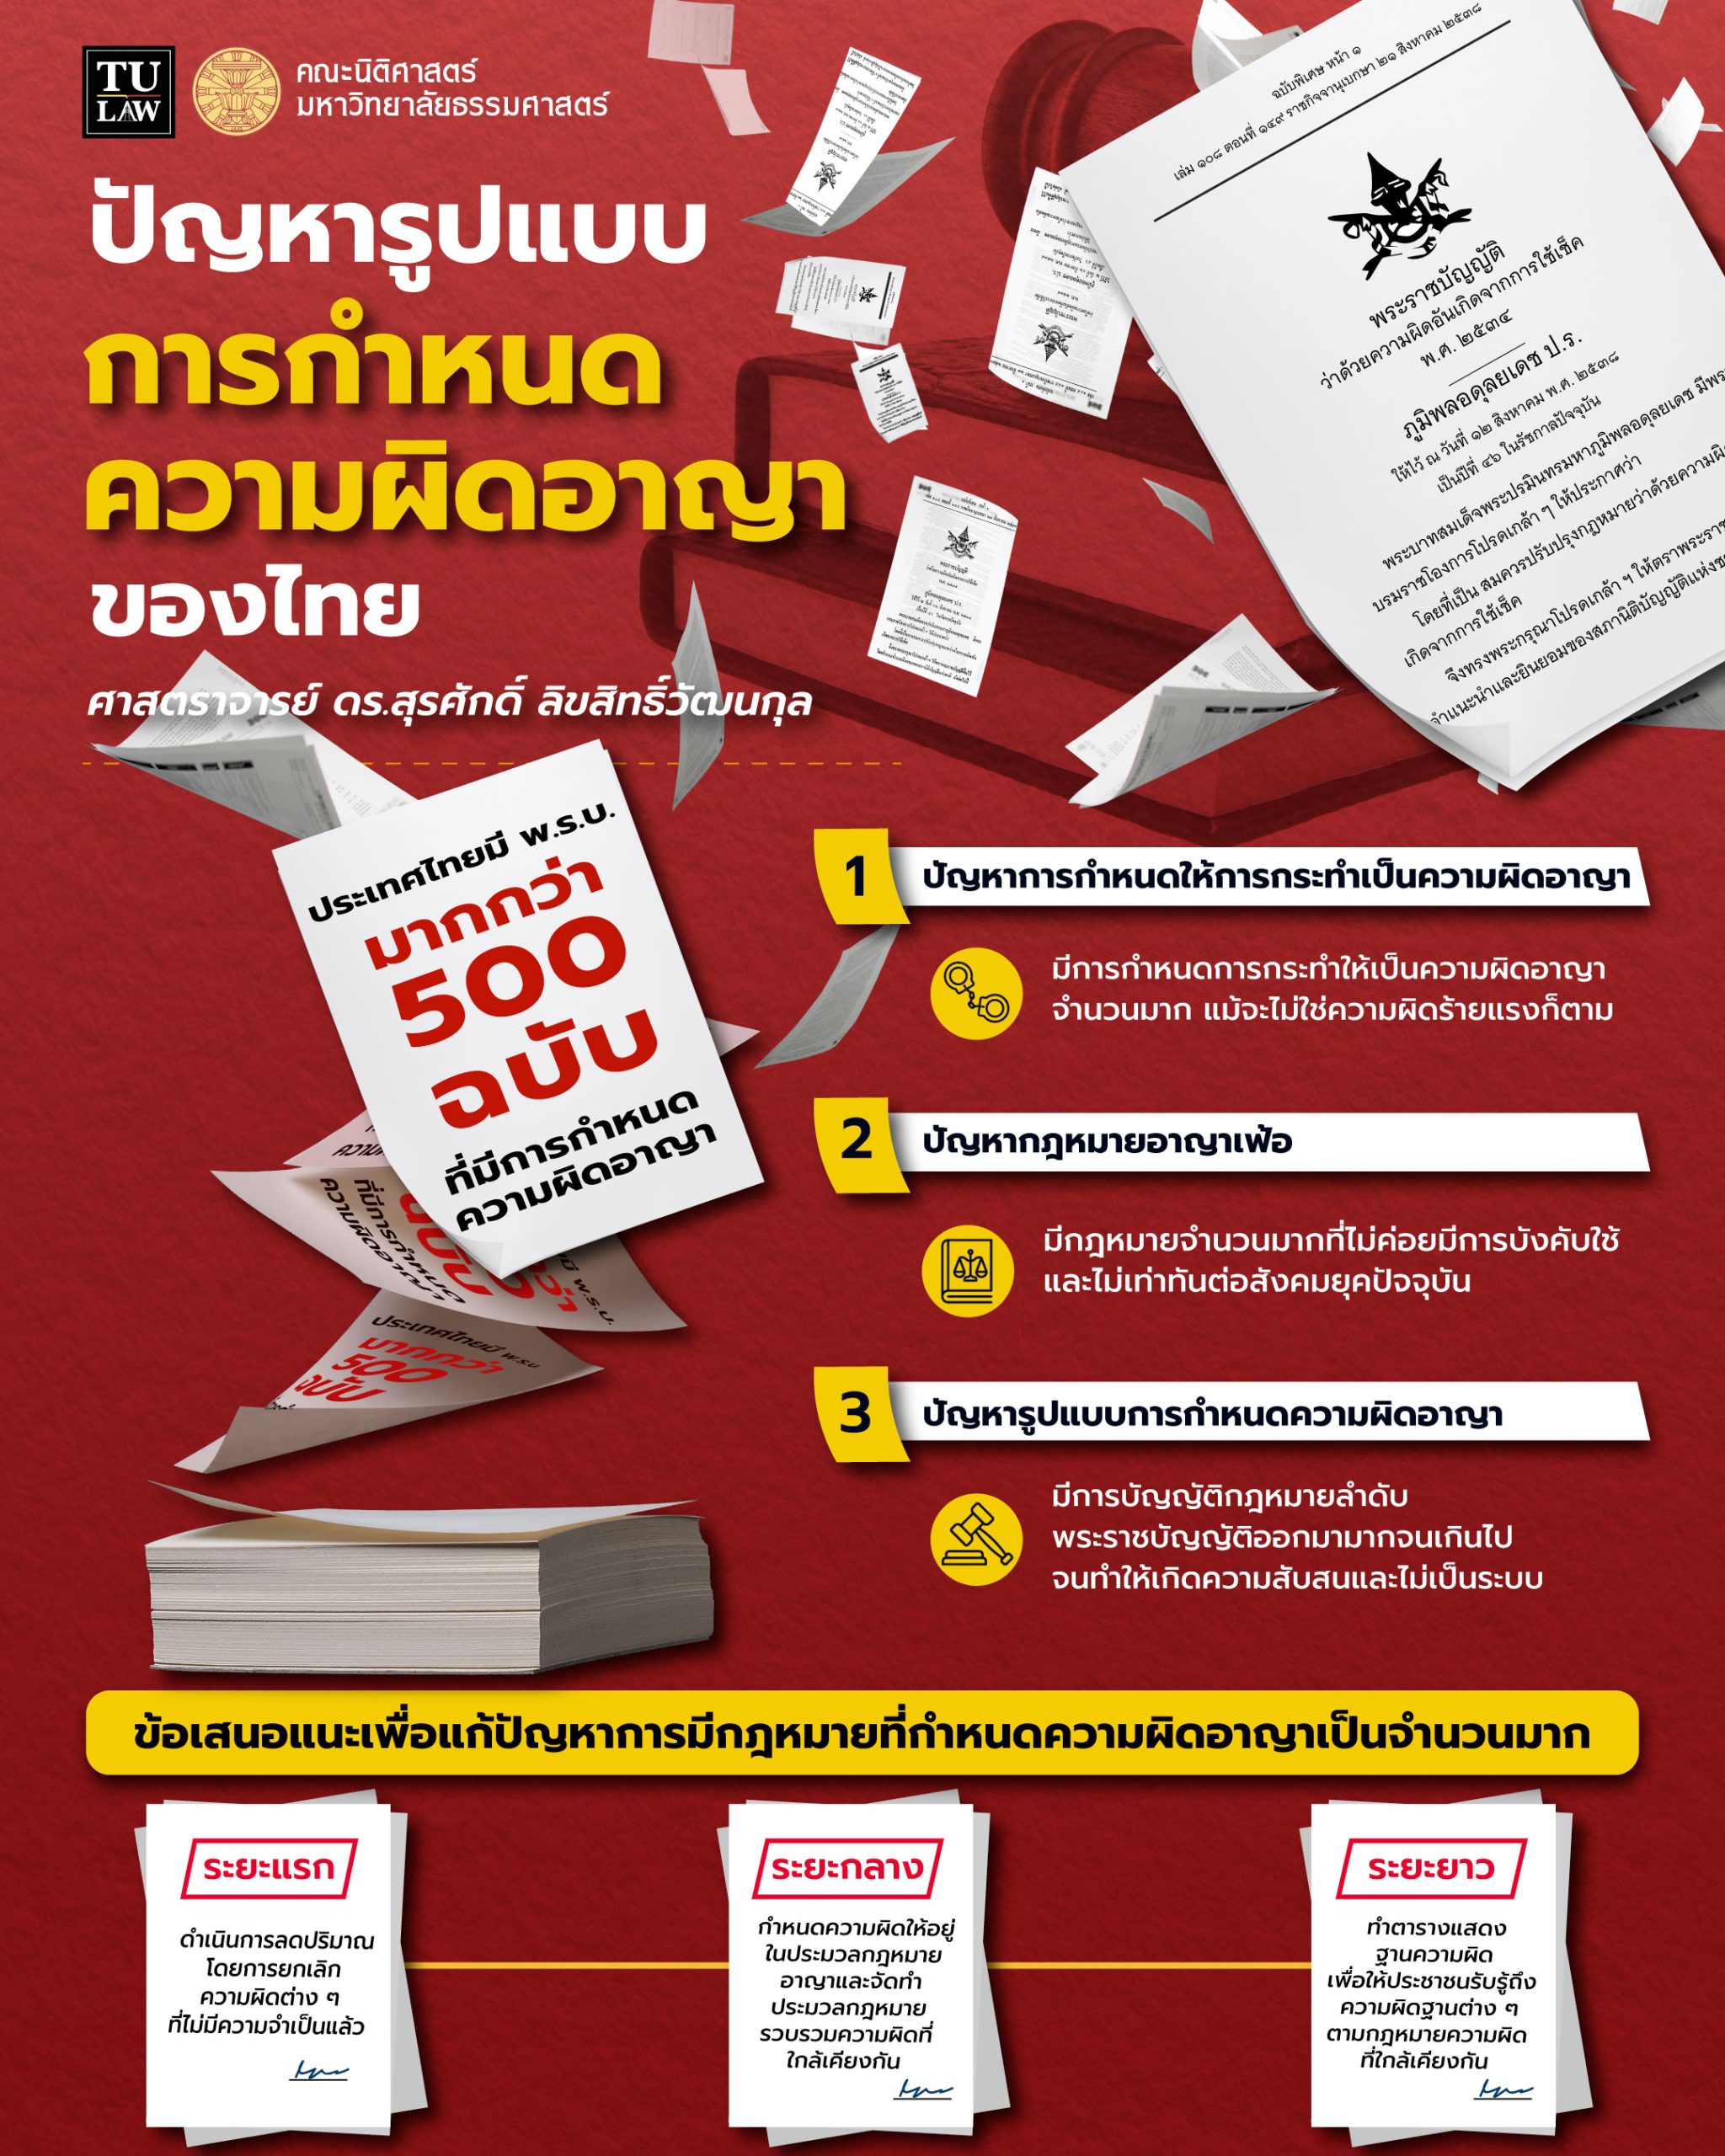 ความรู้ทางกฎหมายหลากหลายและเข้าใจง่าย ชุดที่ 6 : ปัญหาในระบบกฎหมายอาญาไทยผ่านงานวิจัย “รูปแบบการกำหนดความผิดอาญา : ศึกษากรณีของประเทศไทย” โดย ศาสตราจารย์ ดร.สุรศักดิ์ ลิขสิทธิ์วัฒนกุล